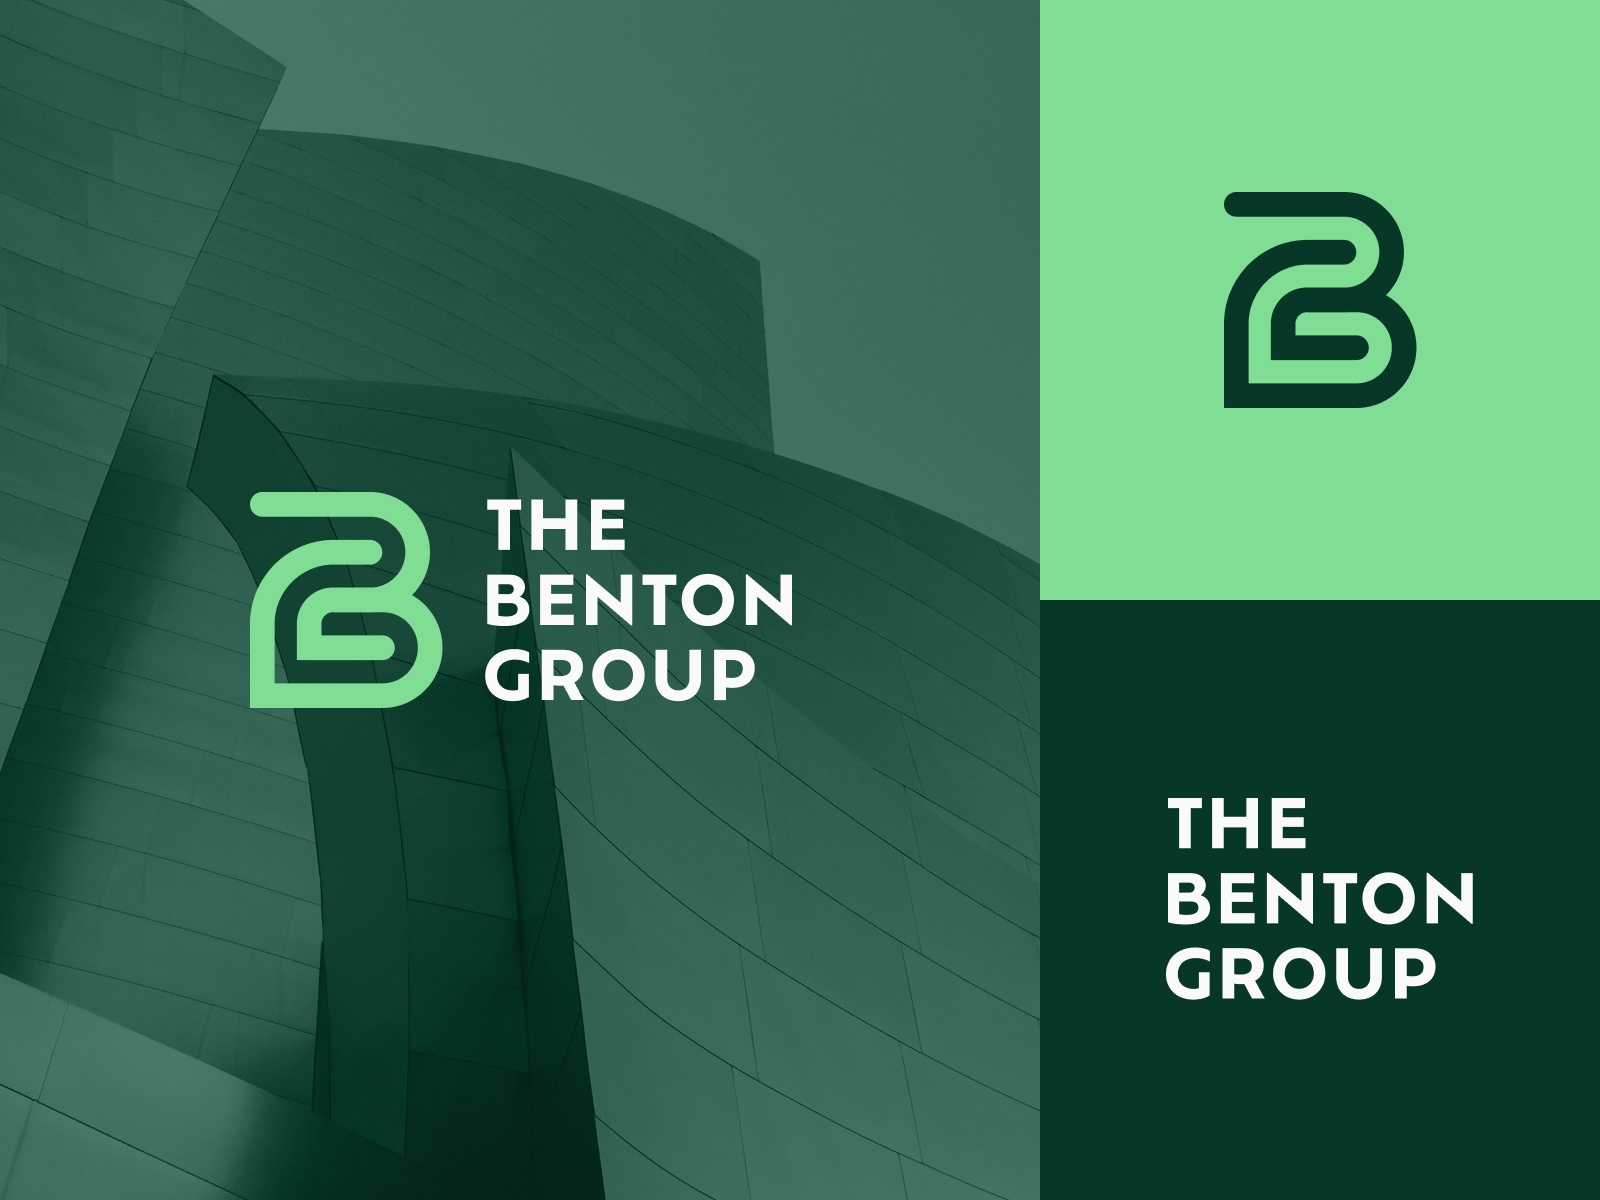 The Benton Group logo